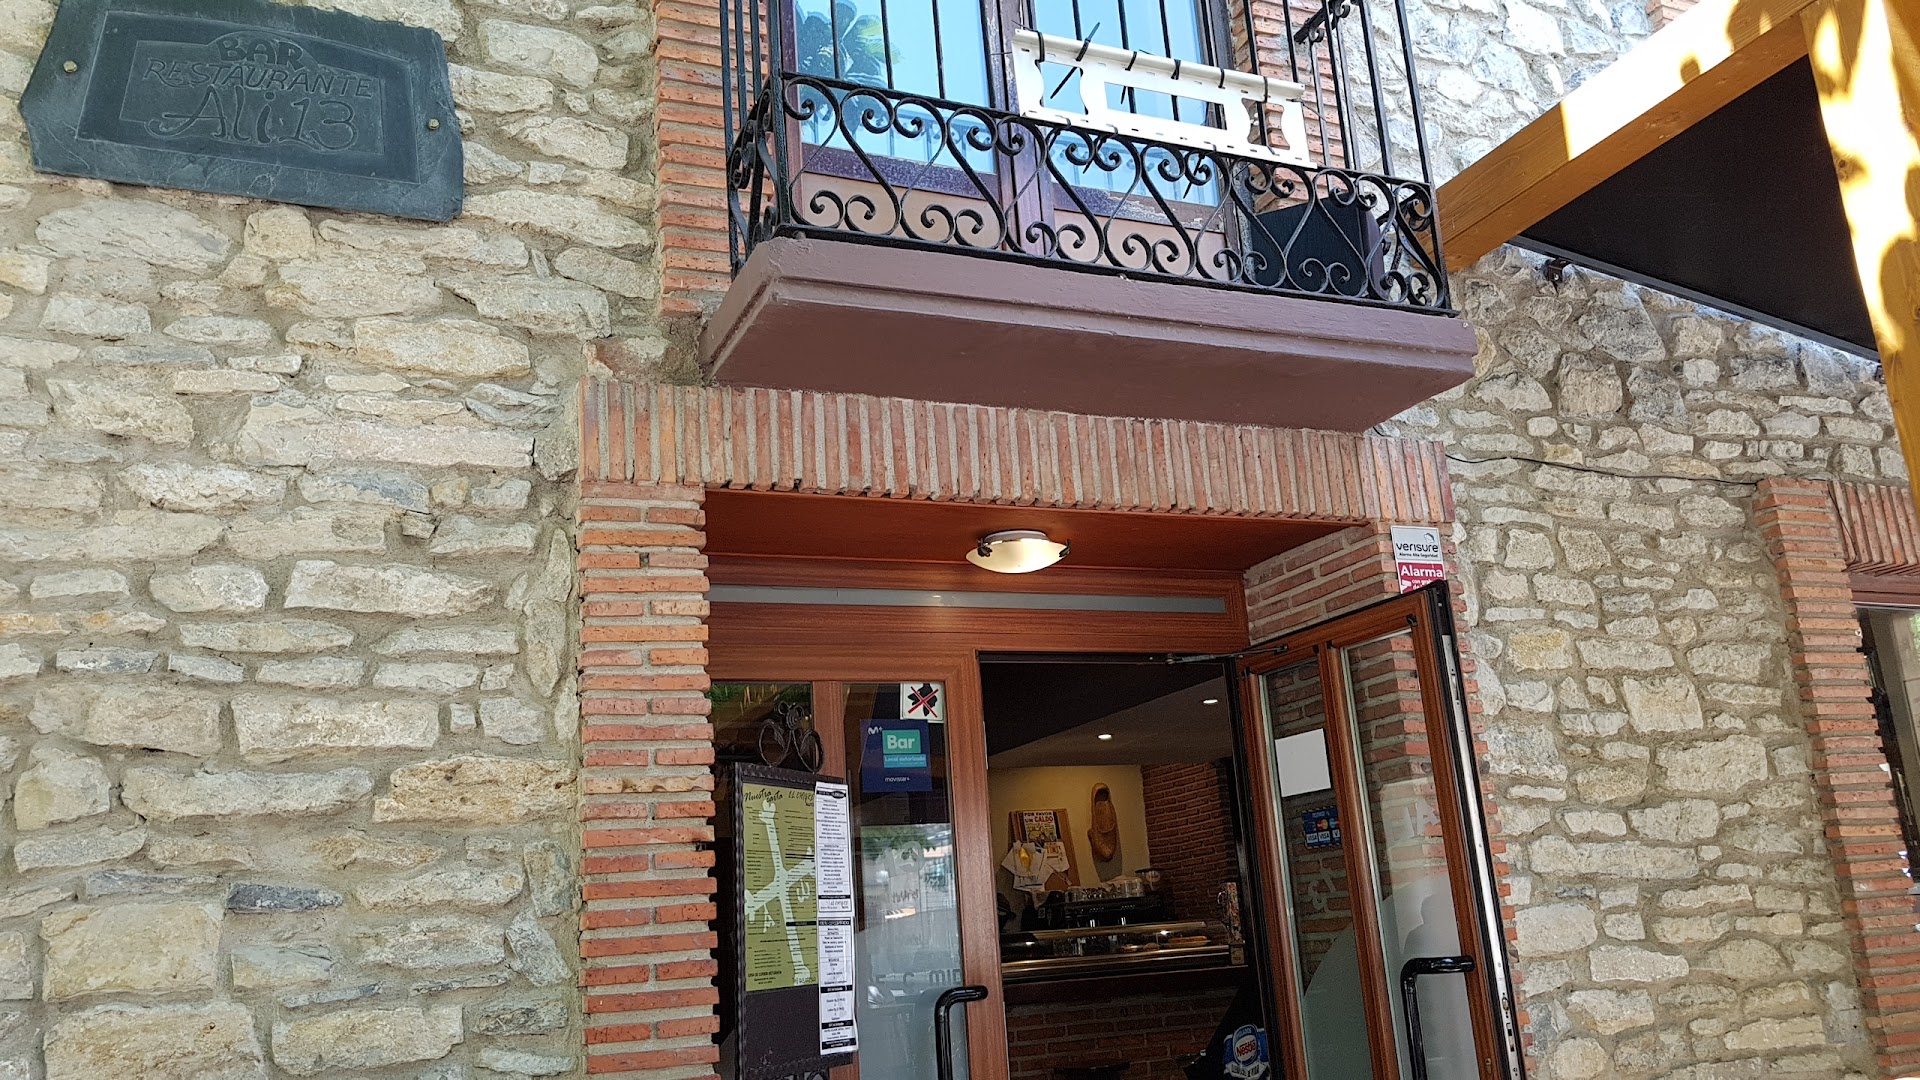 Restaurante asturiano "El Chigre ALI13"